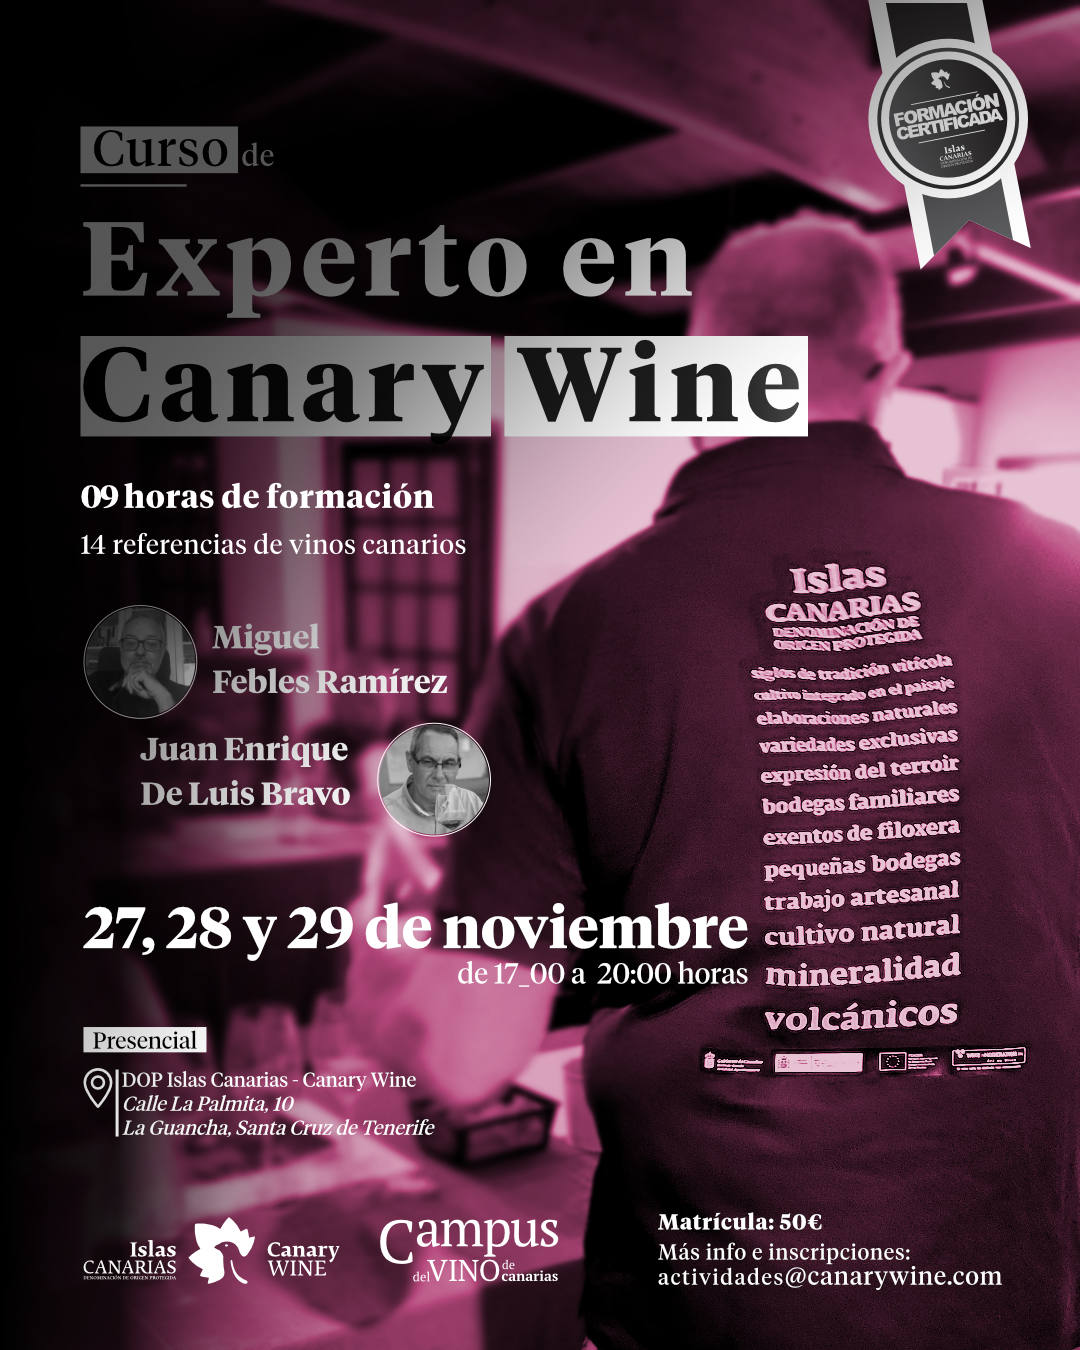 La DOP Islas Canarias – Canary Wine abre las inscripciones para su curso «Experto en Canary Wine»